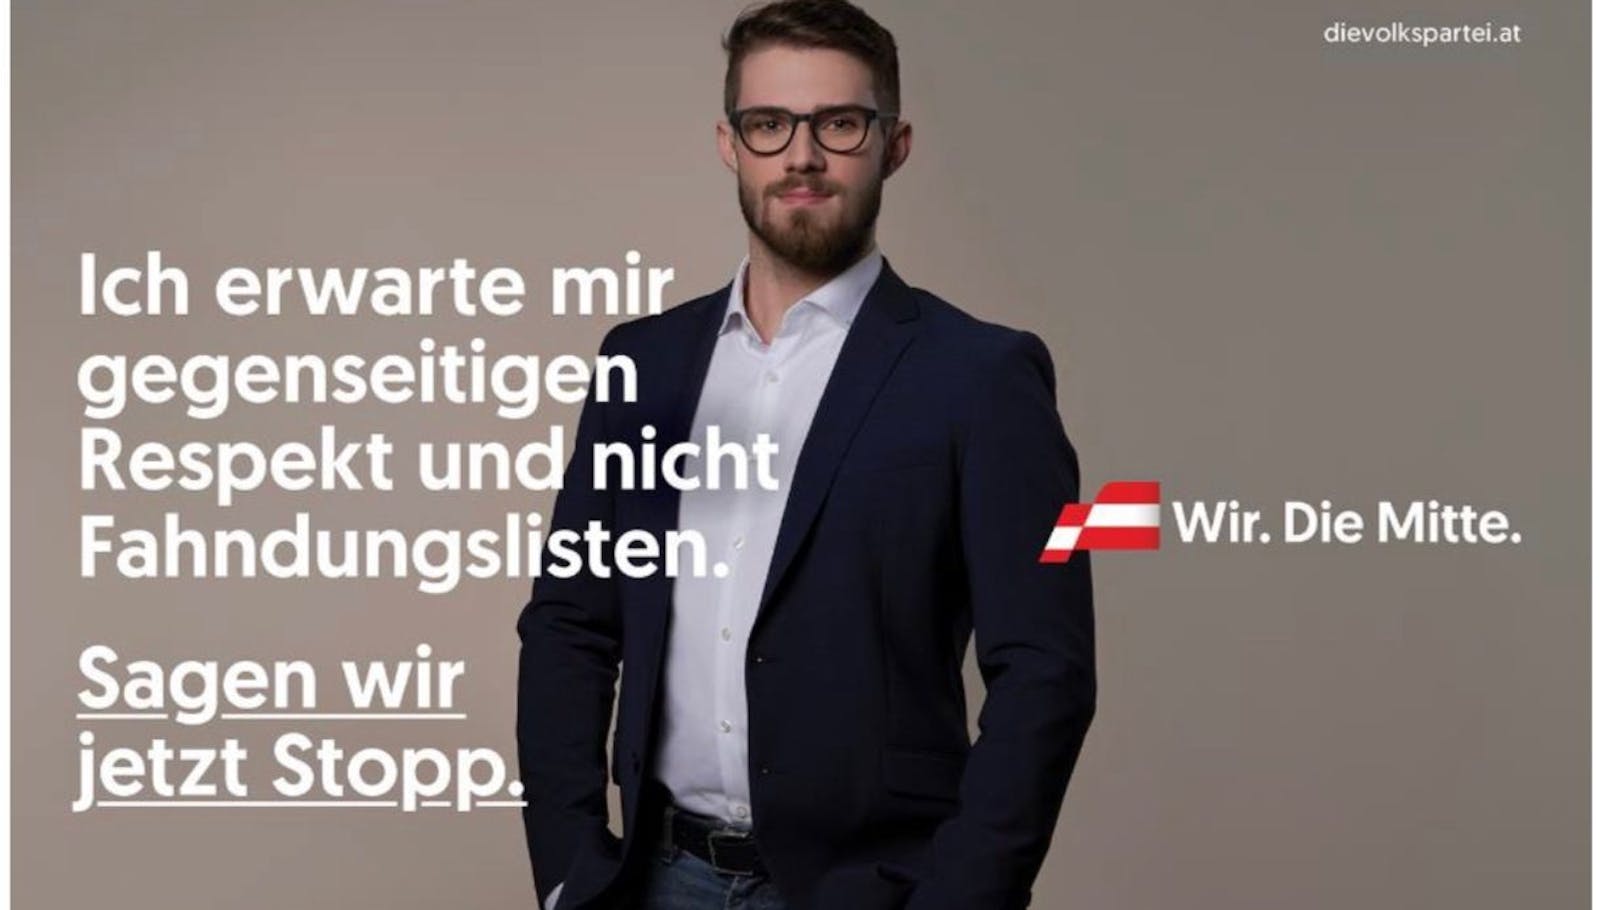 "Fahndungslisten": Die ÖVP-Anspielung auf Kickl